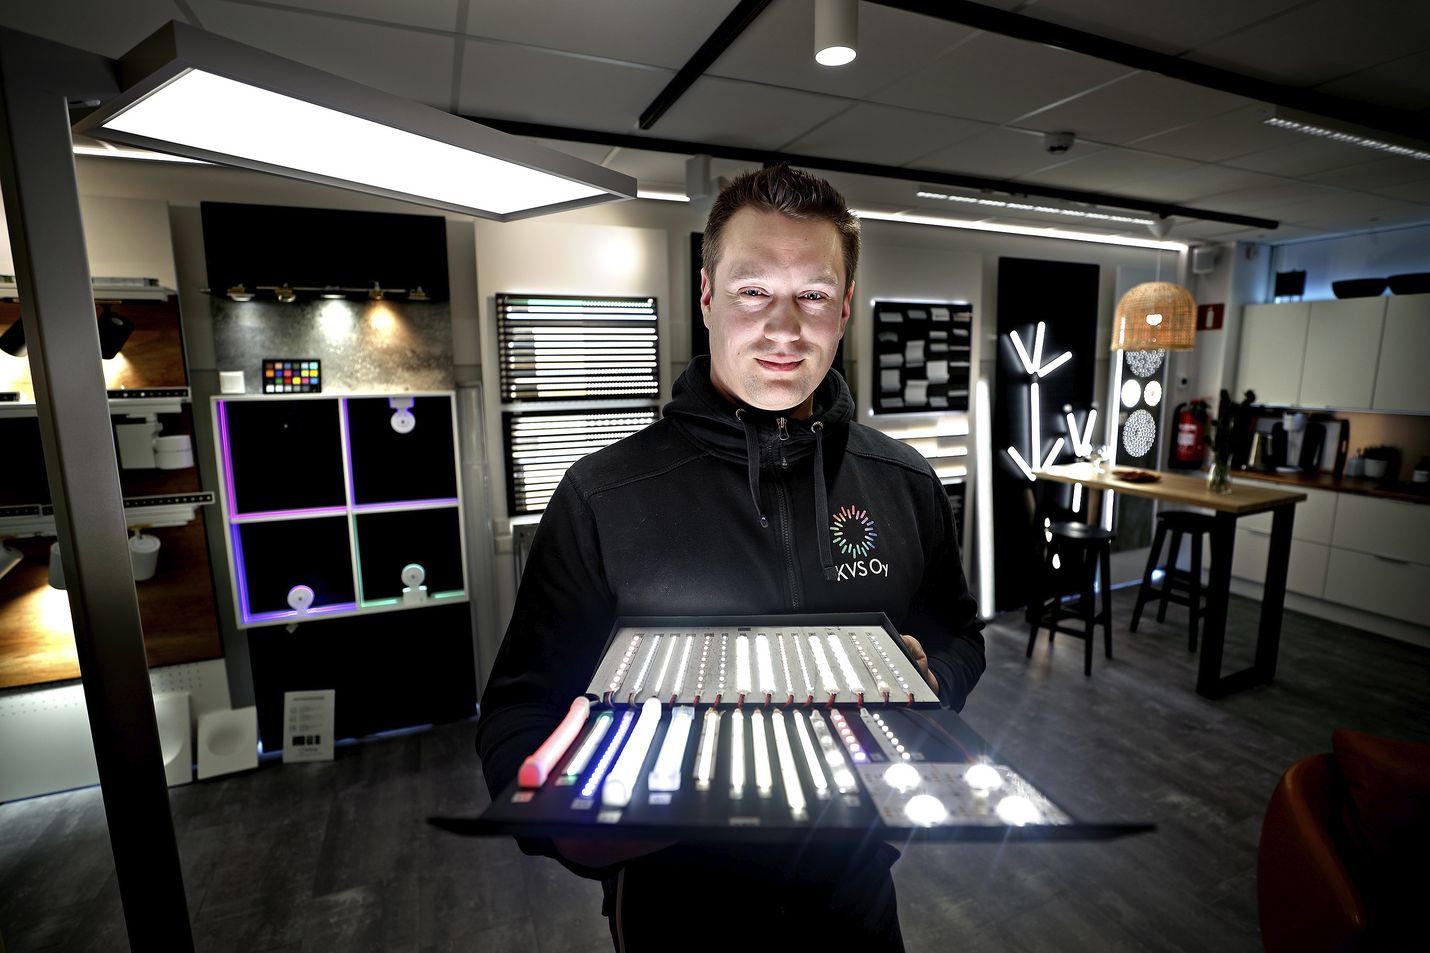 KVS Oy:n toimitusjohtaja ja valaistussuunnittelija Jukka Asp esittelee led-mallisalkkua, jossa on erilaisia led-nauhoja ja muutama yksittäinen teholedi.